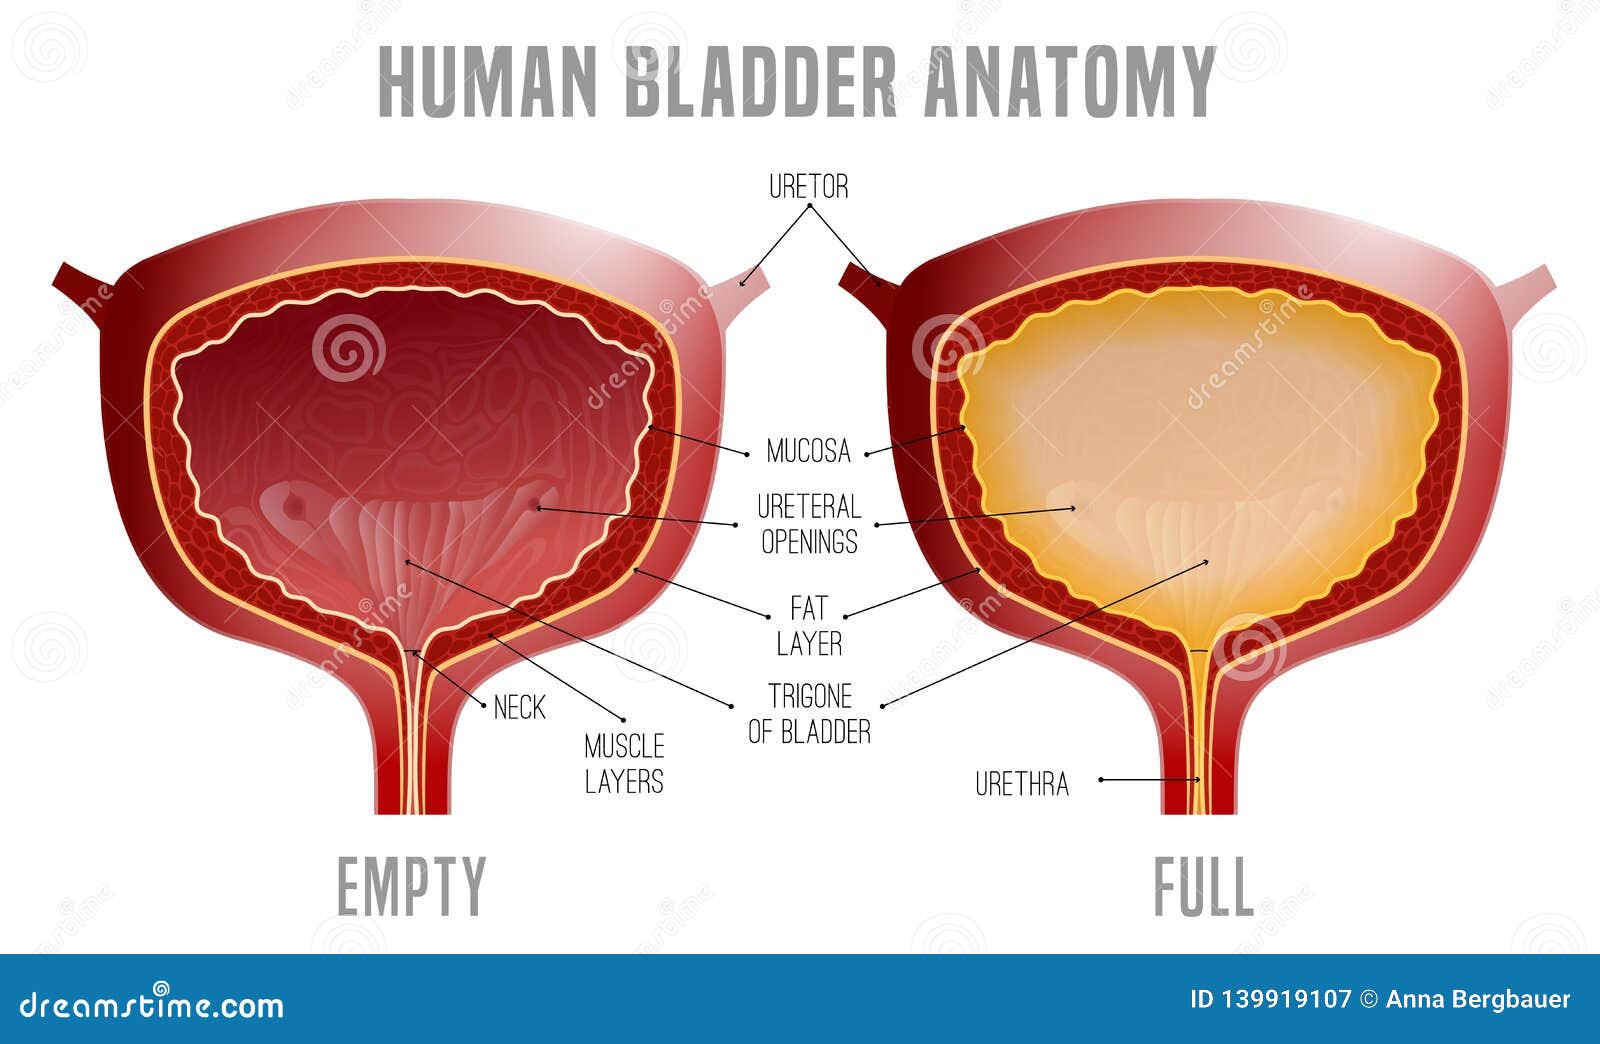 bladder anatomy scheme